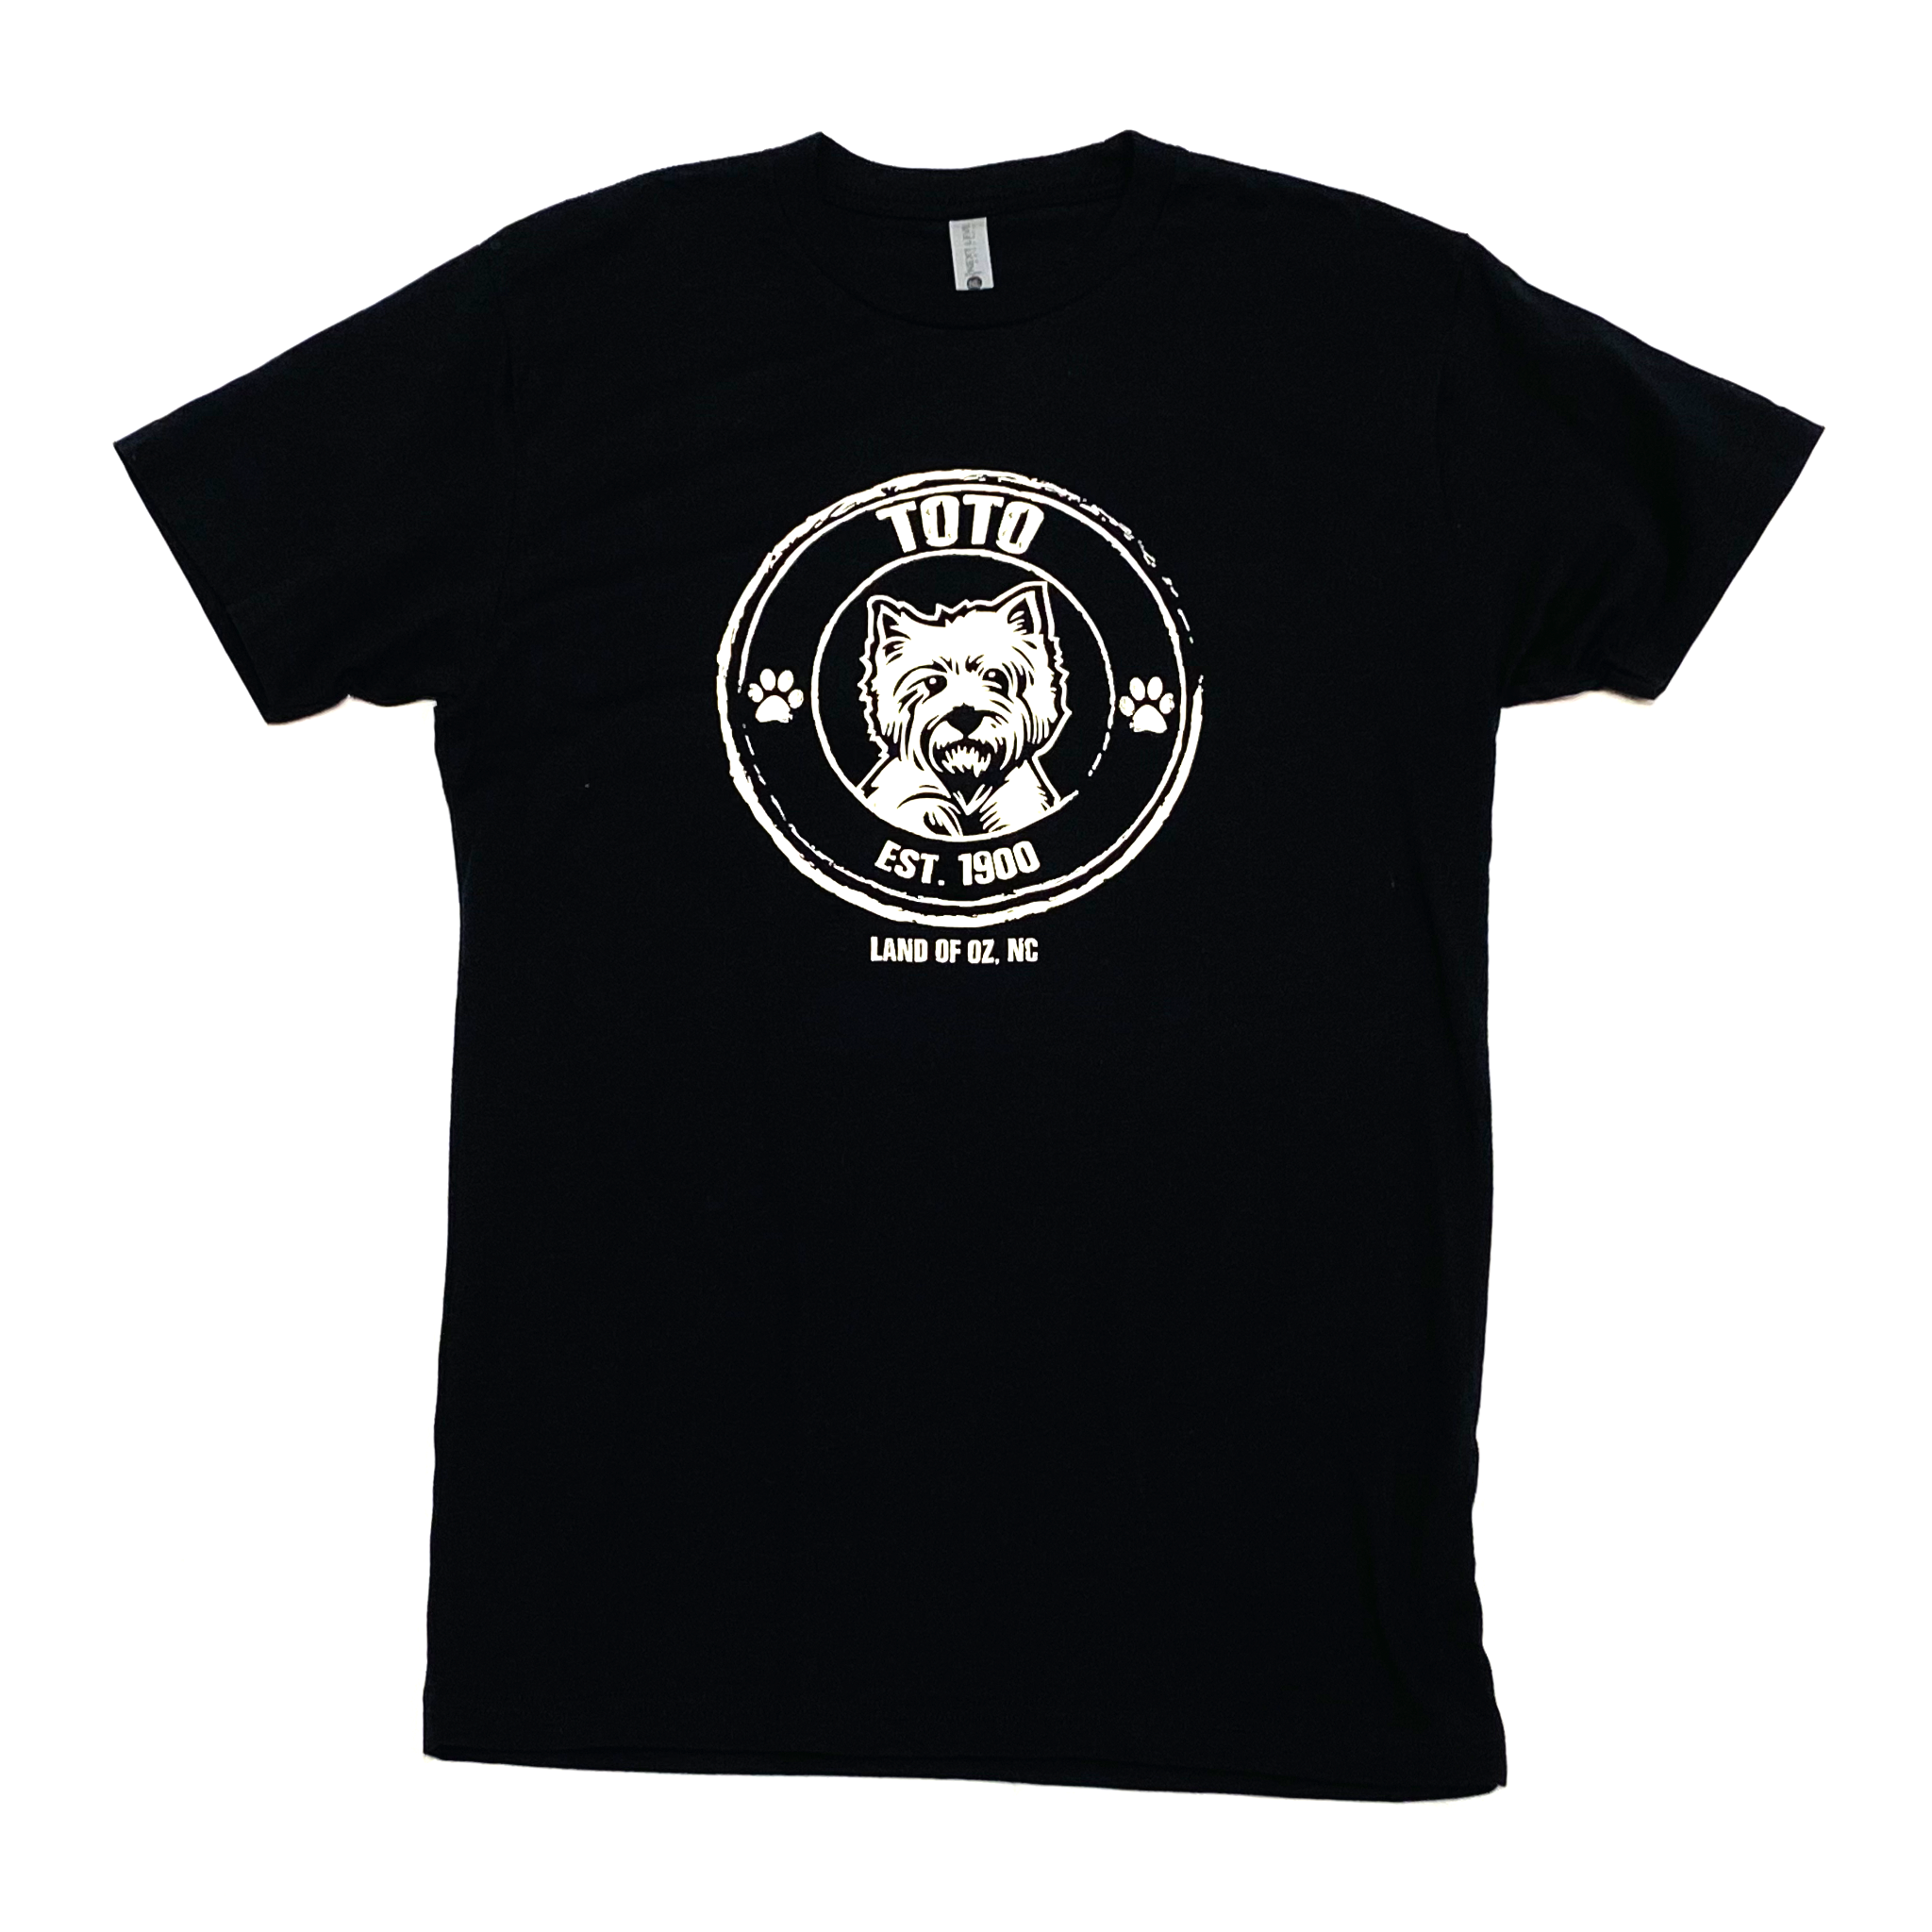 Toto Established 1900 T-Shirt | Land of Oz Shop